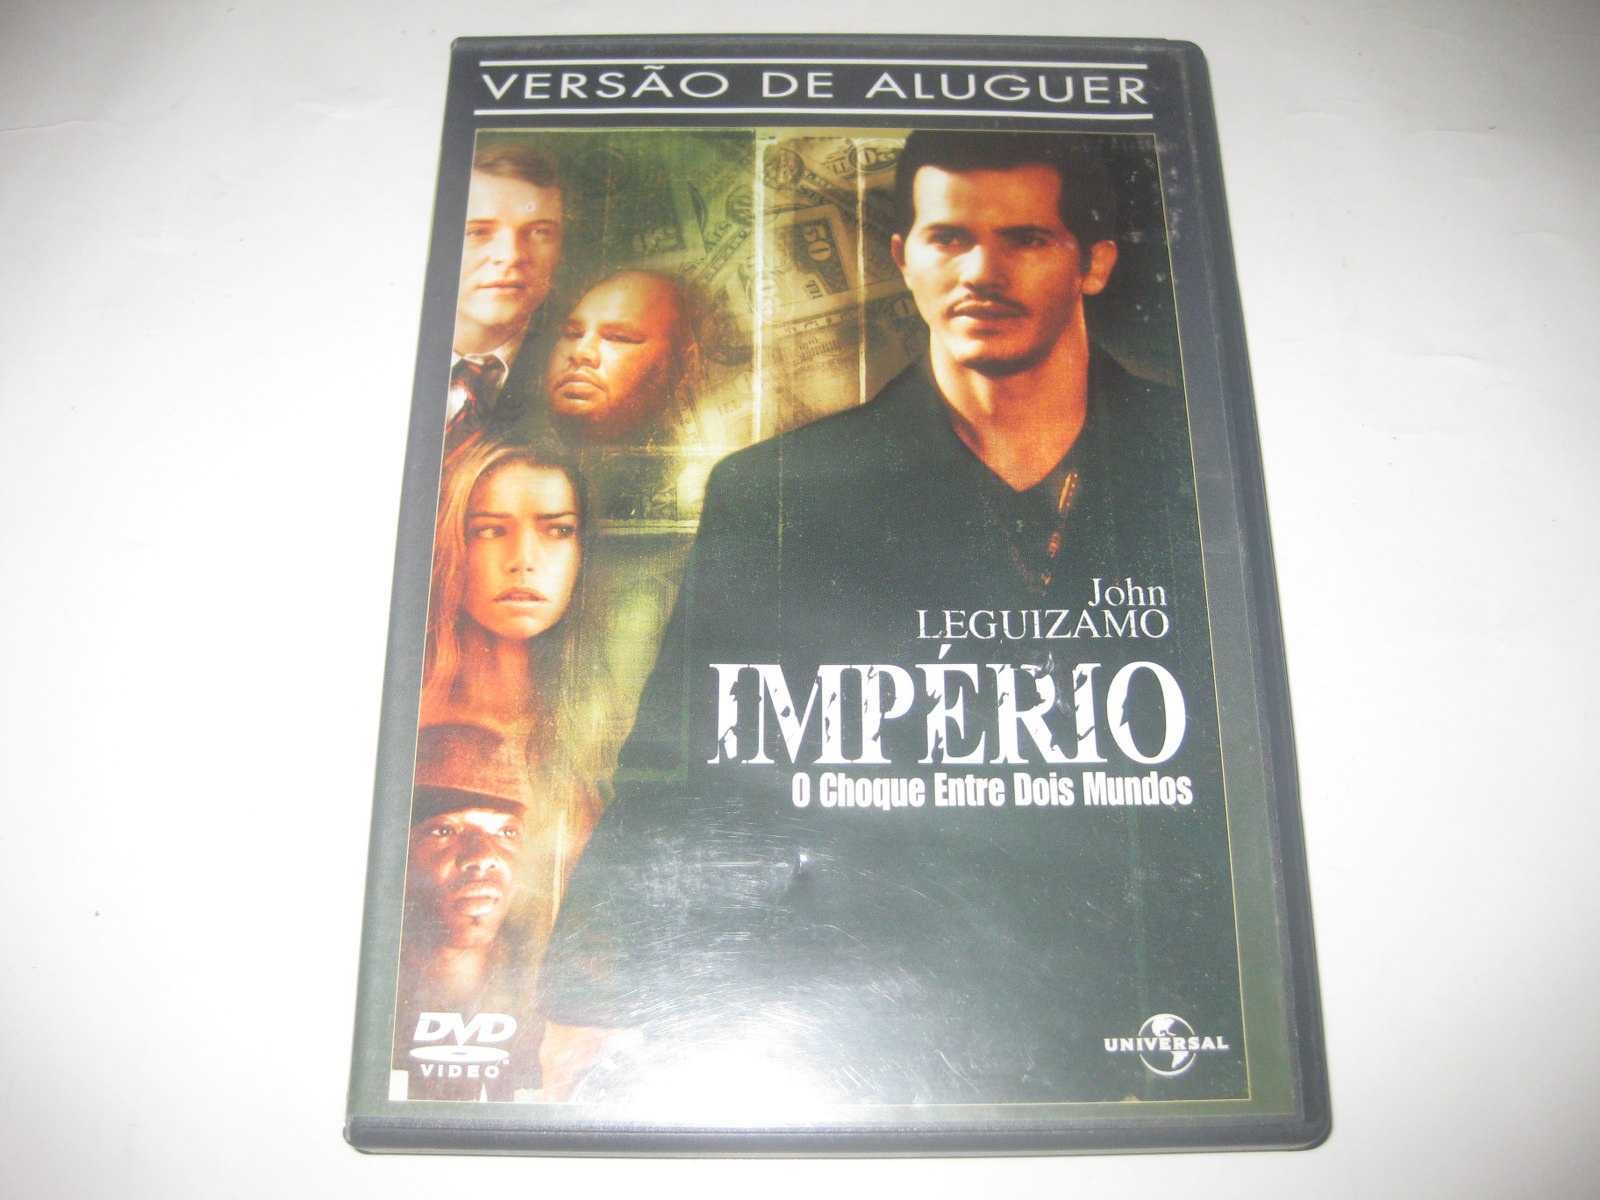 DVD "Império" com John Leguizamo